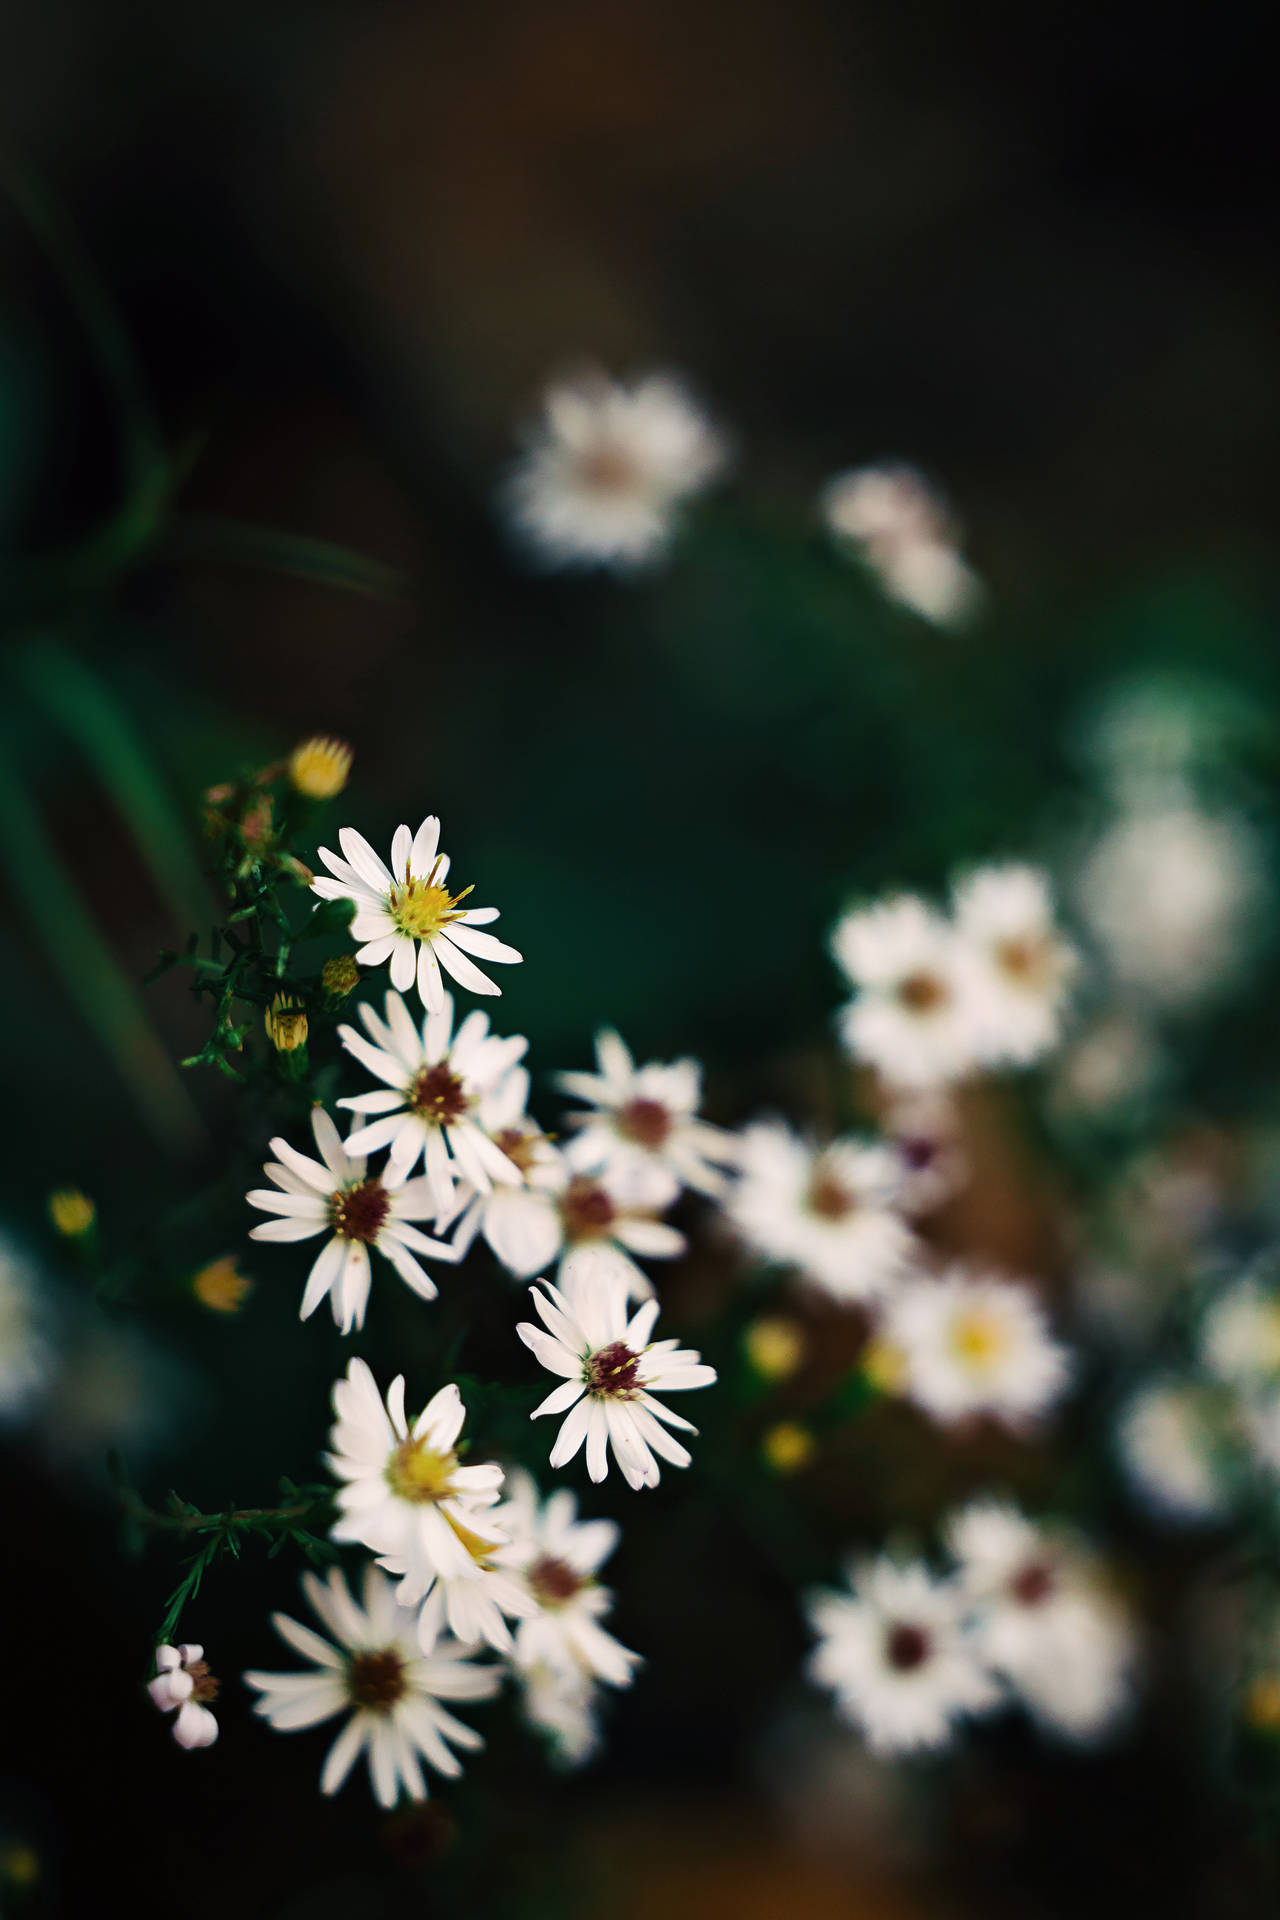 Hãy chiêm ngưỡng những bức ảnh lung linh và tuyệt đẹp của những chiếc iPhone được trang trí cùng với những bó hoa trắng trang nhã. Chỉ cần nhìn thấy những bức ảnh này, bạn sẽ thấy được sự độc đáo và dịu dàng mà những bông hoa trắng mang lại cho chiếc iPhone của bạn.